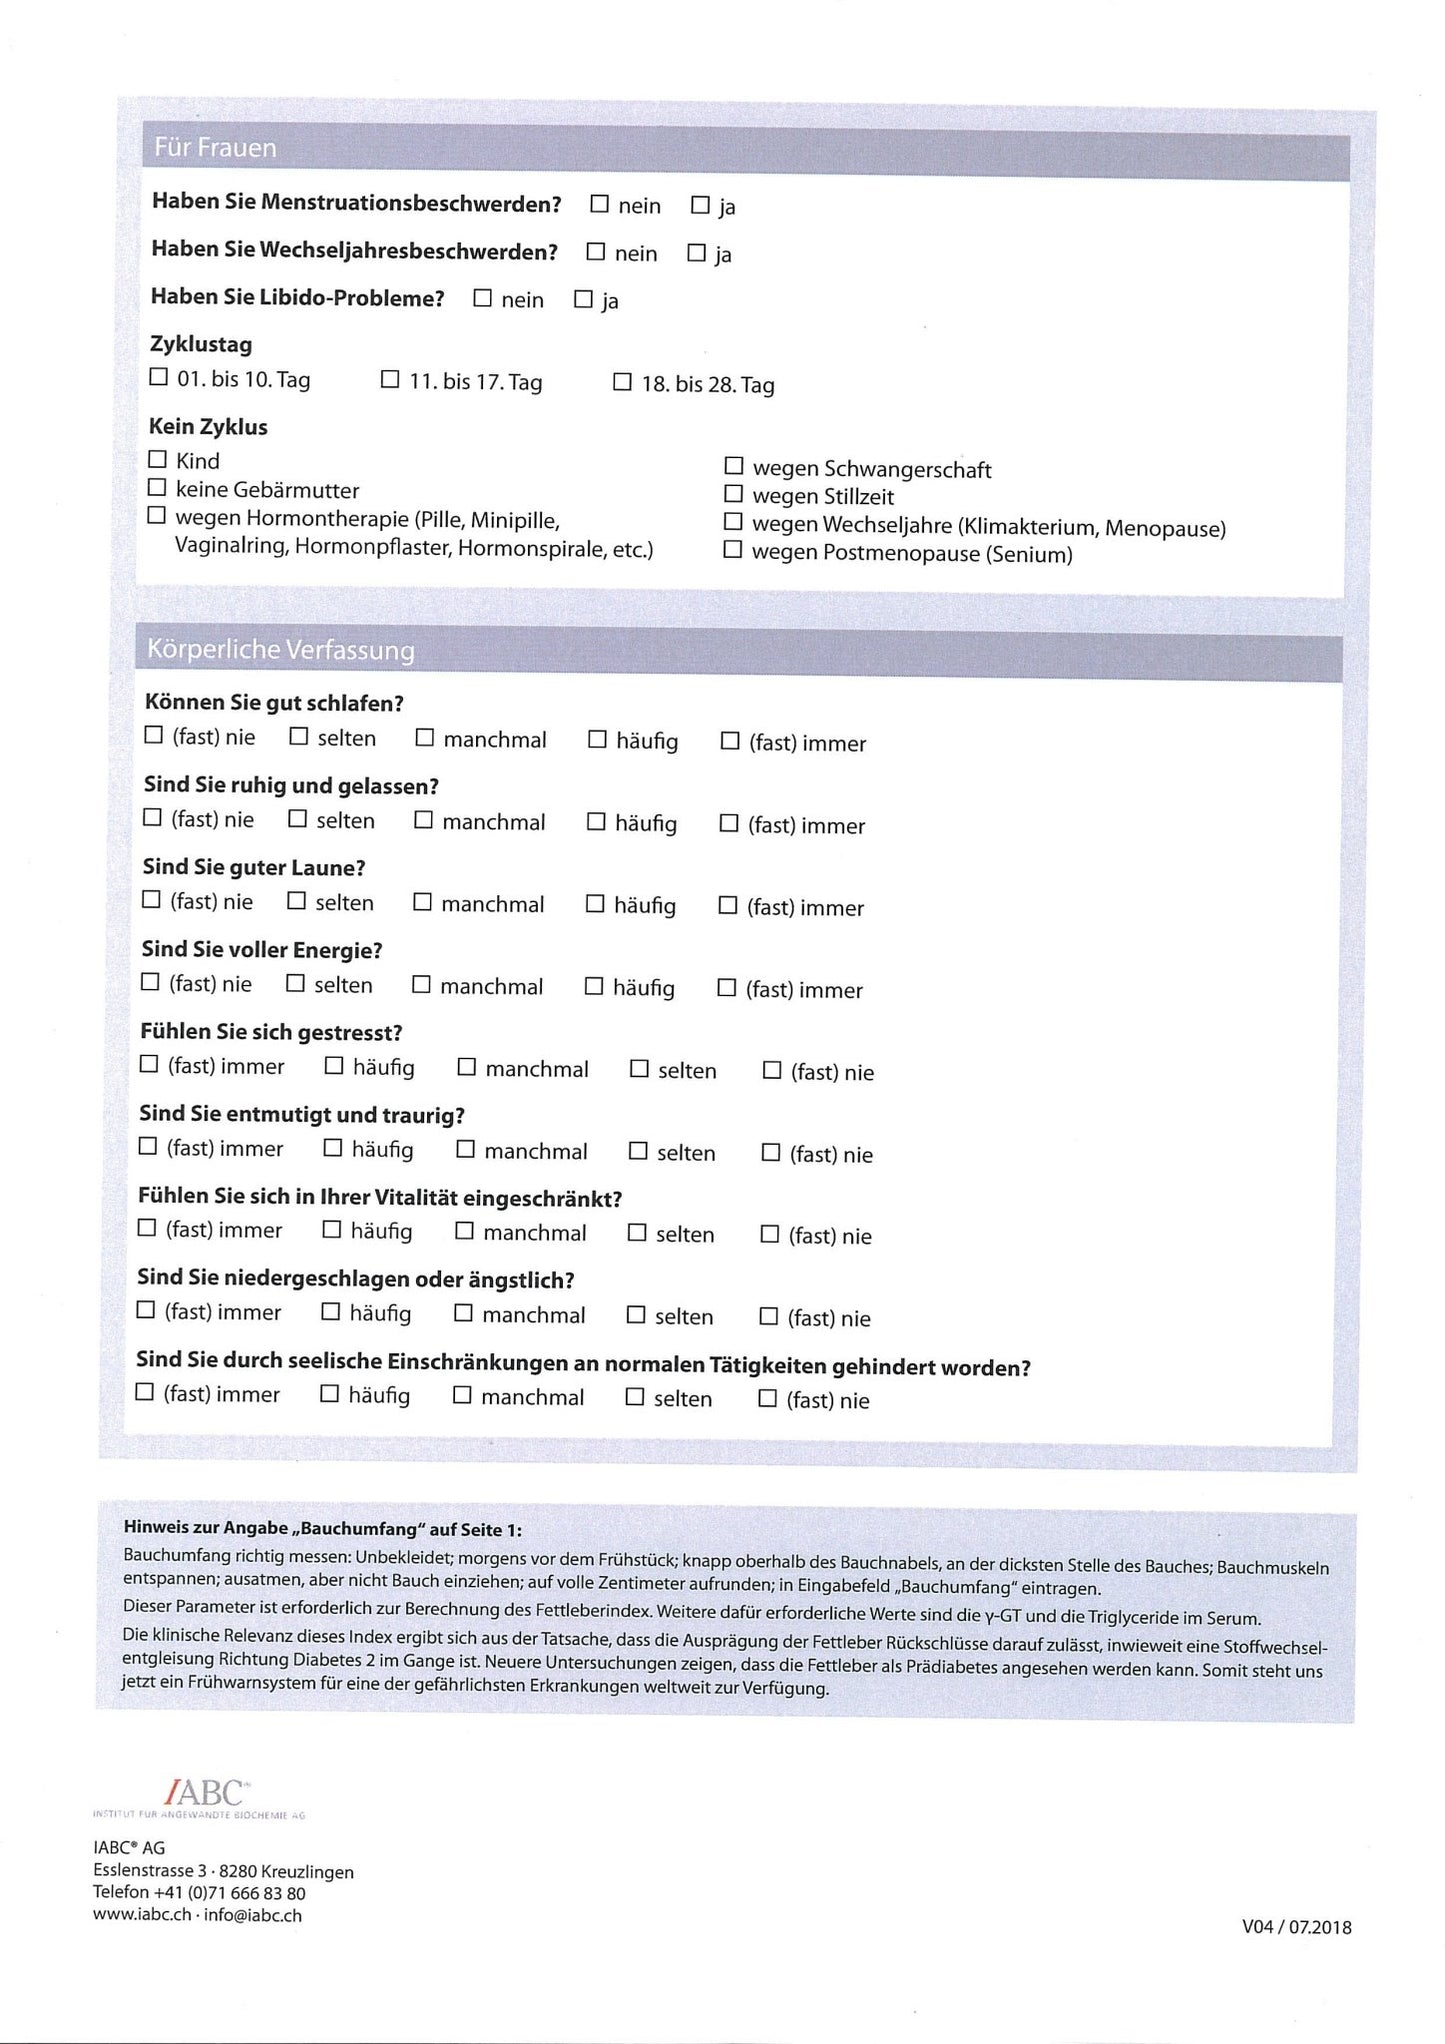 IABC Metabolischer Analysestatus Basis venös - MIROMI - Swiss Essentials GmbH